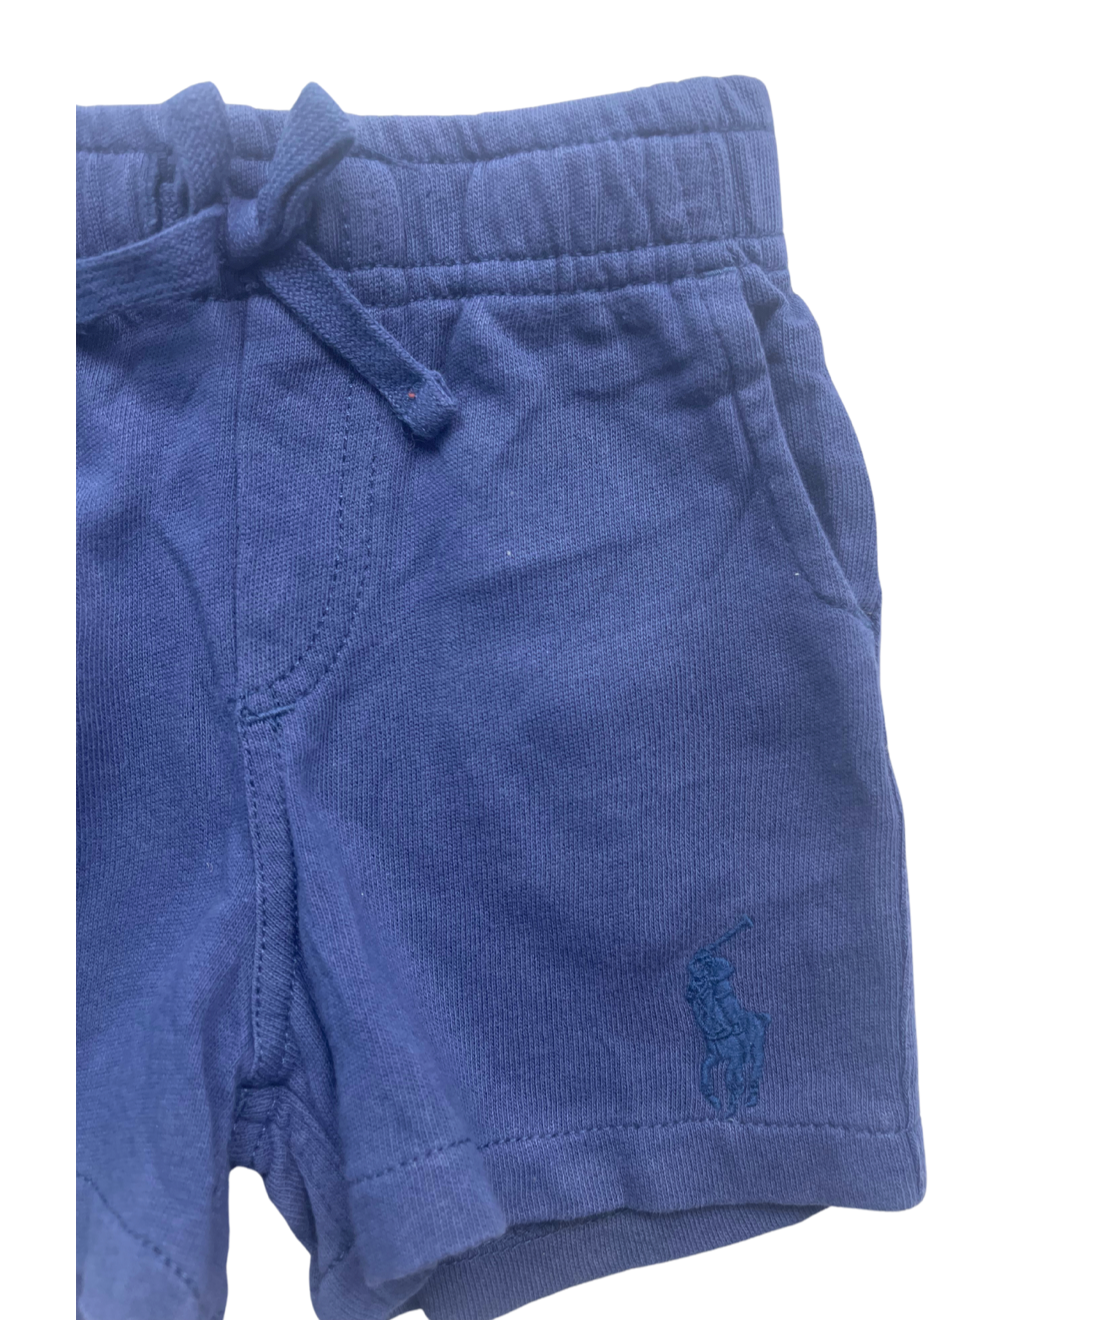 RALPH LAUREN - Short en coton bleu marine - 6 mois